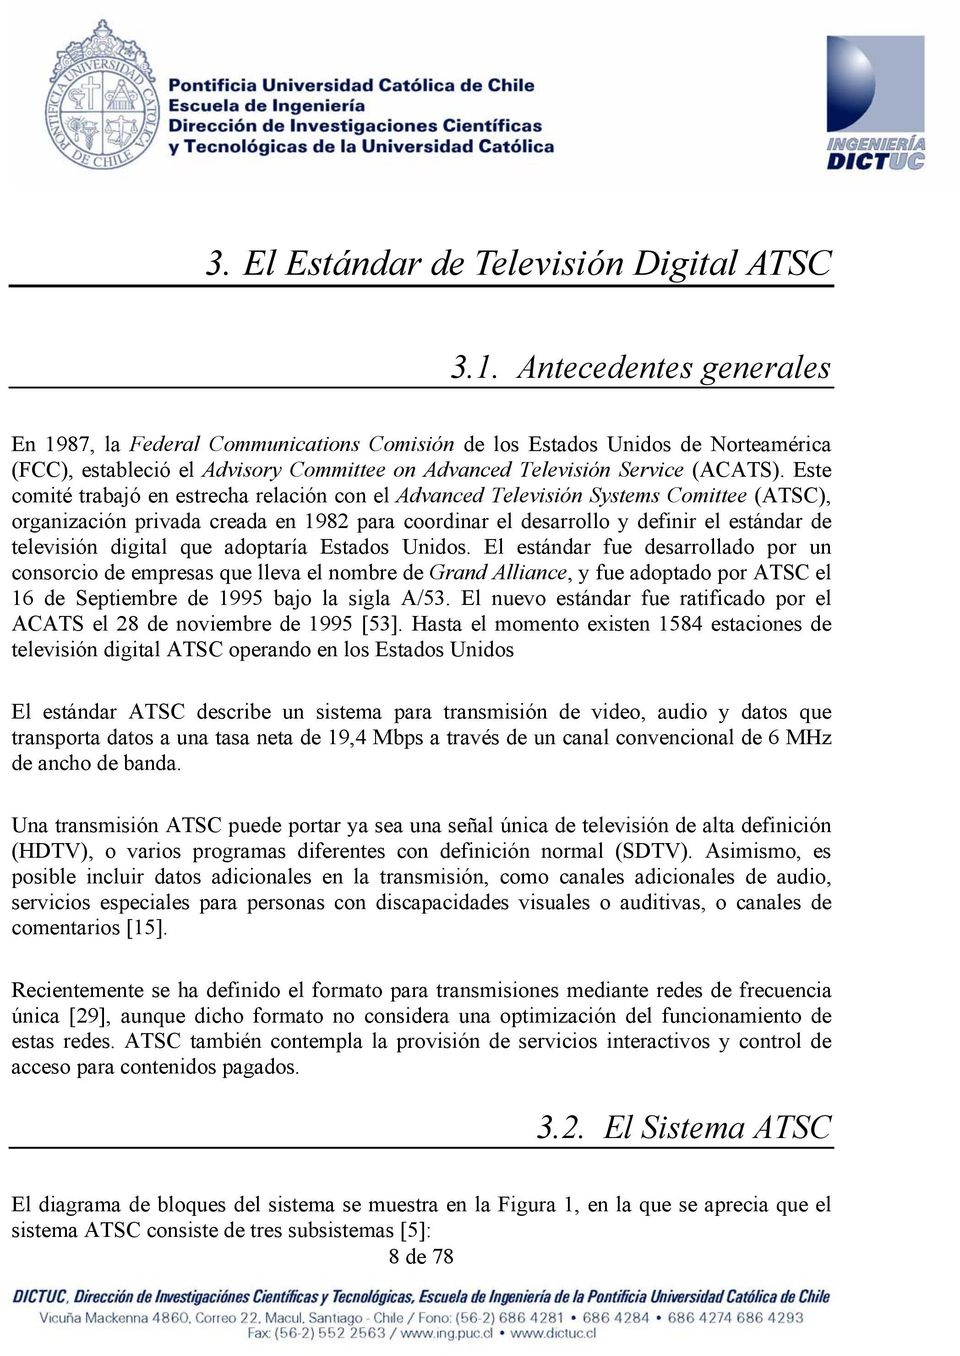 Este comité trabajó en estrecha relación con el Advanced Televisión Systems Comittee (ATSC), organización privada creada en 1982 para coordinar el desarrollo y definir el estándar de televisión